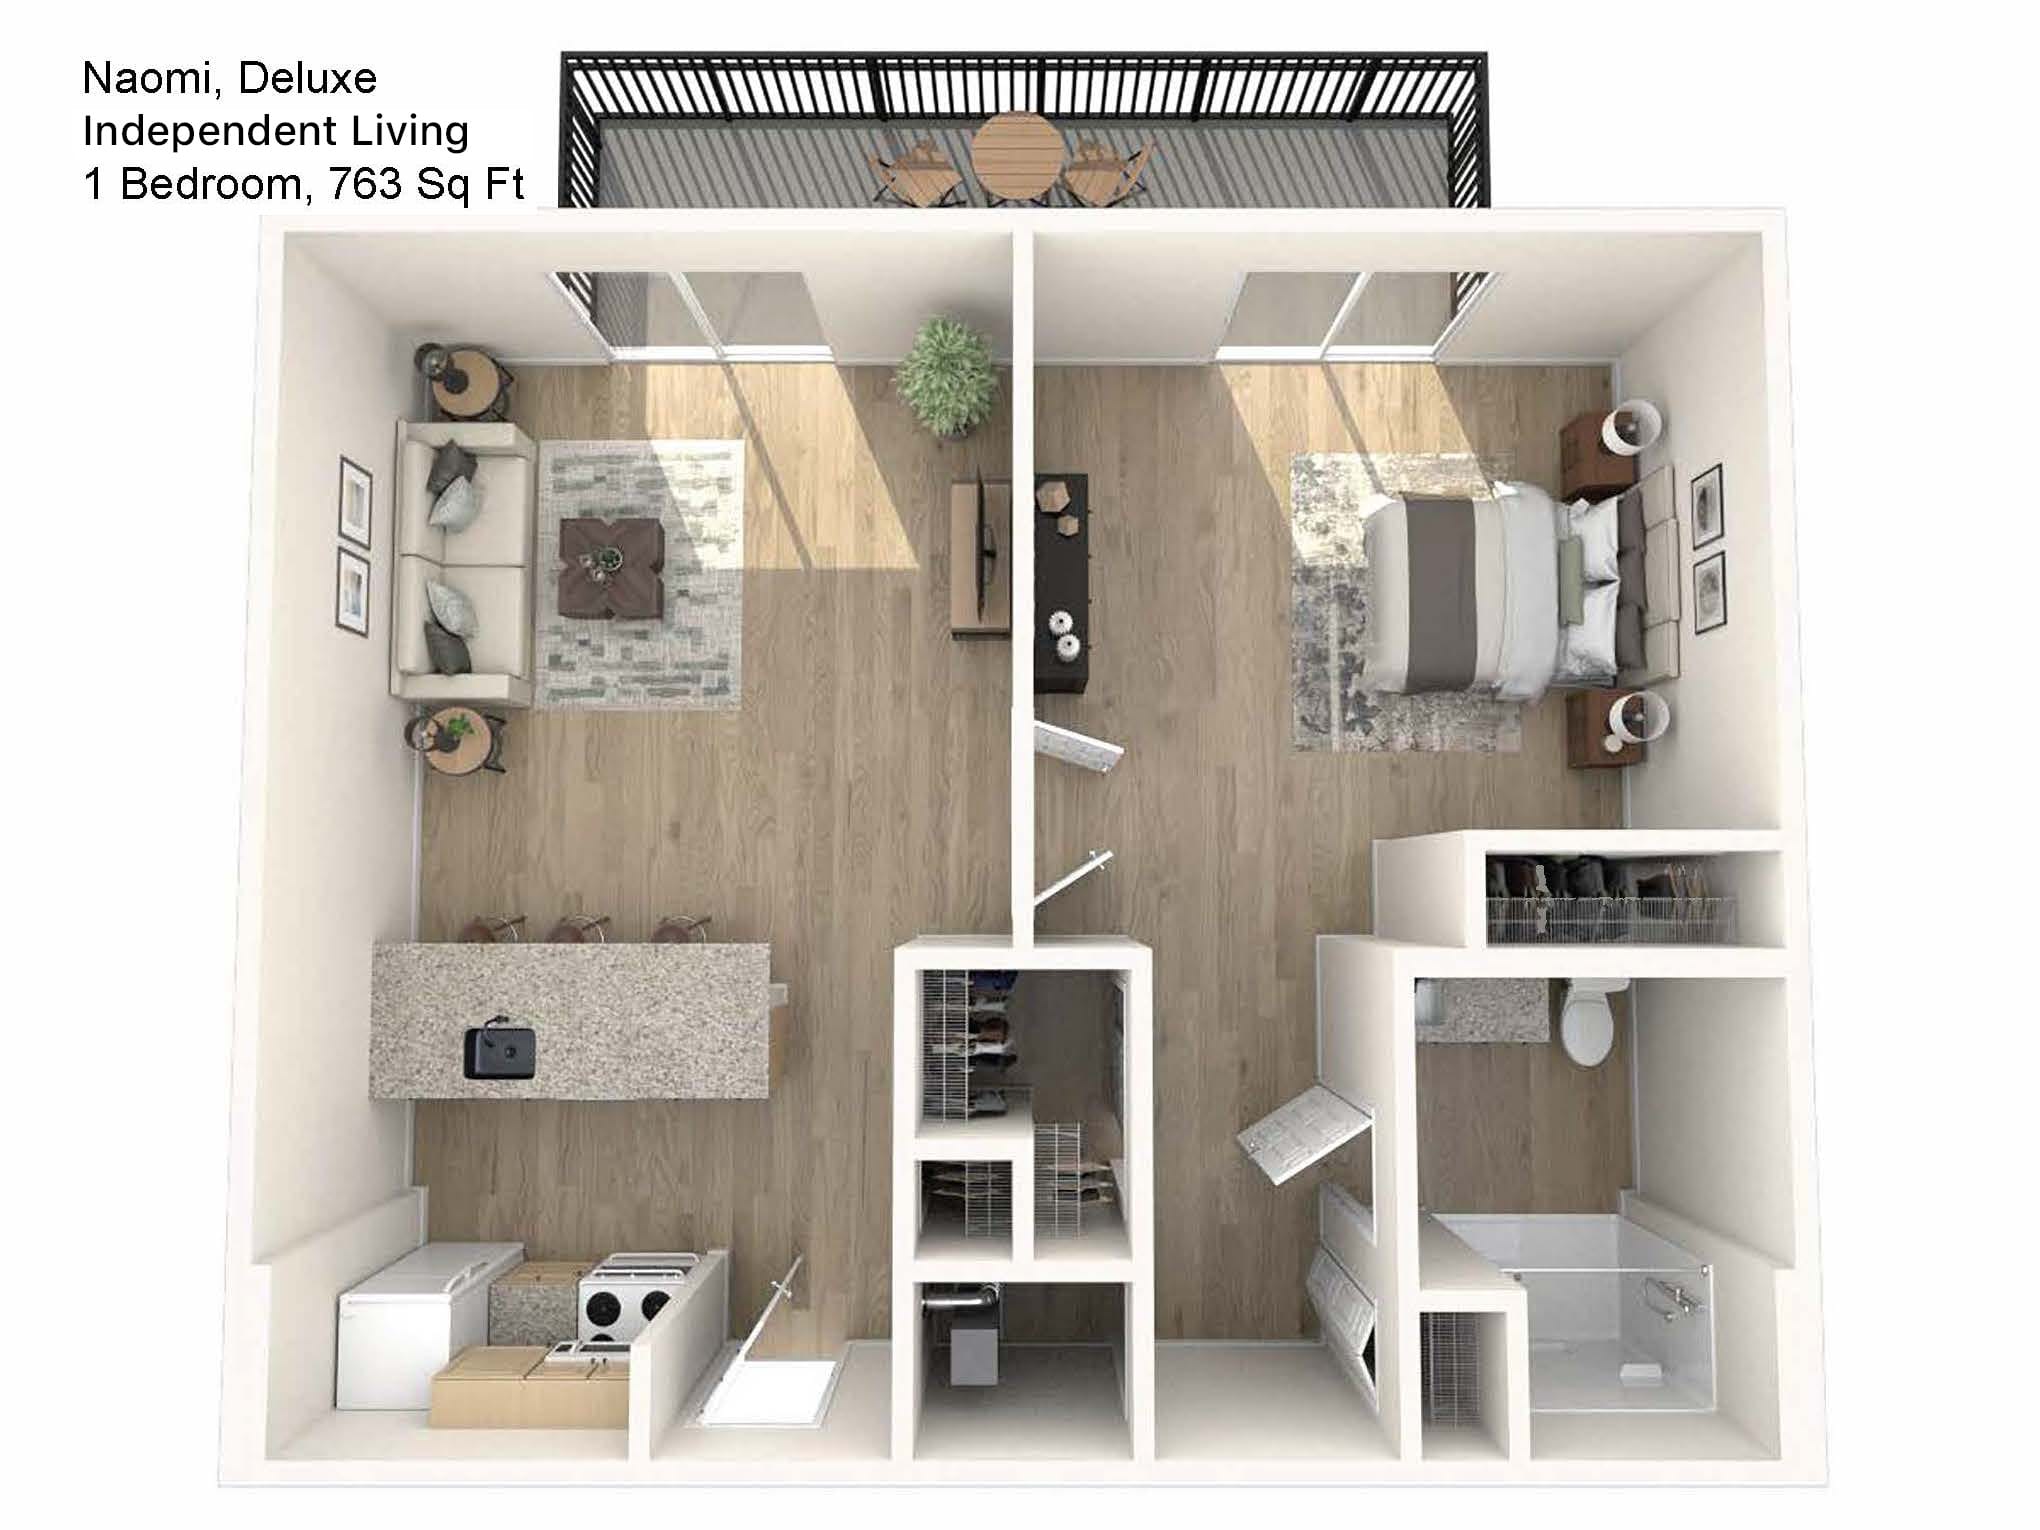 Sarah Community Deluxe Independent Living Floor Plan